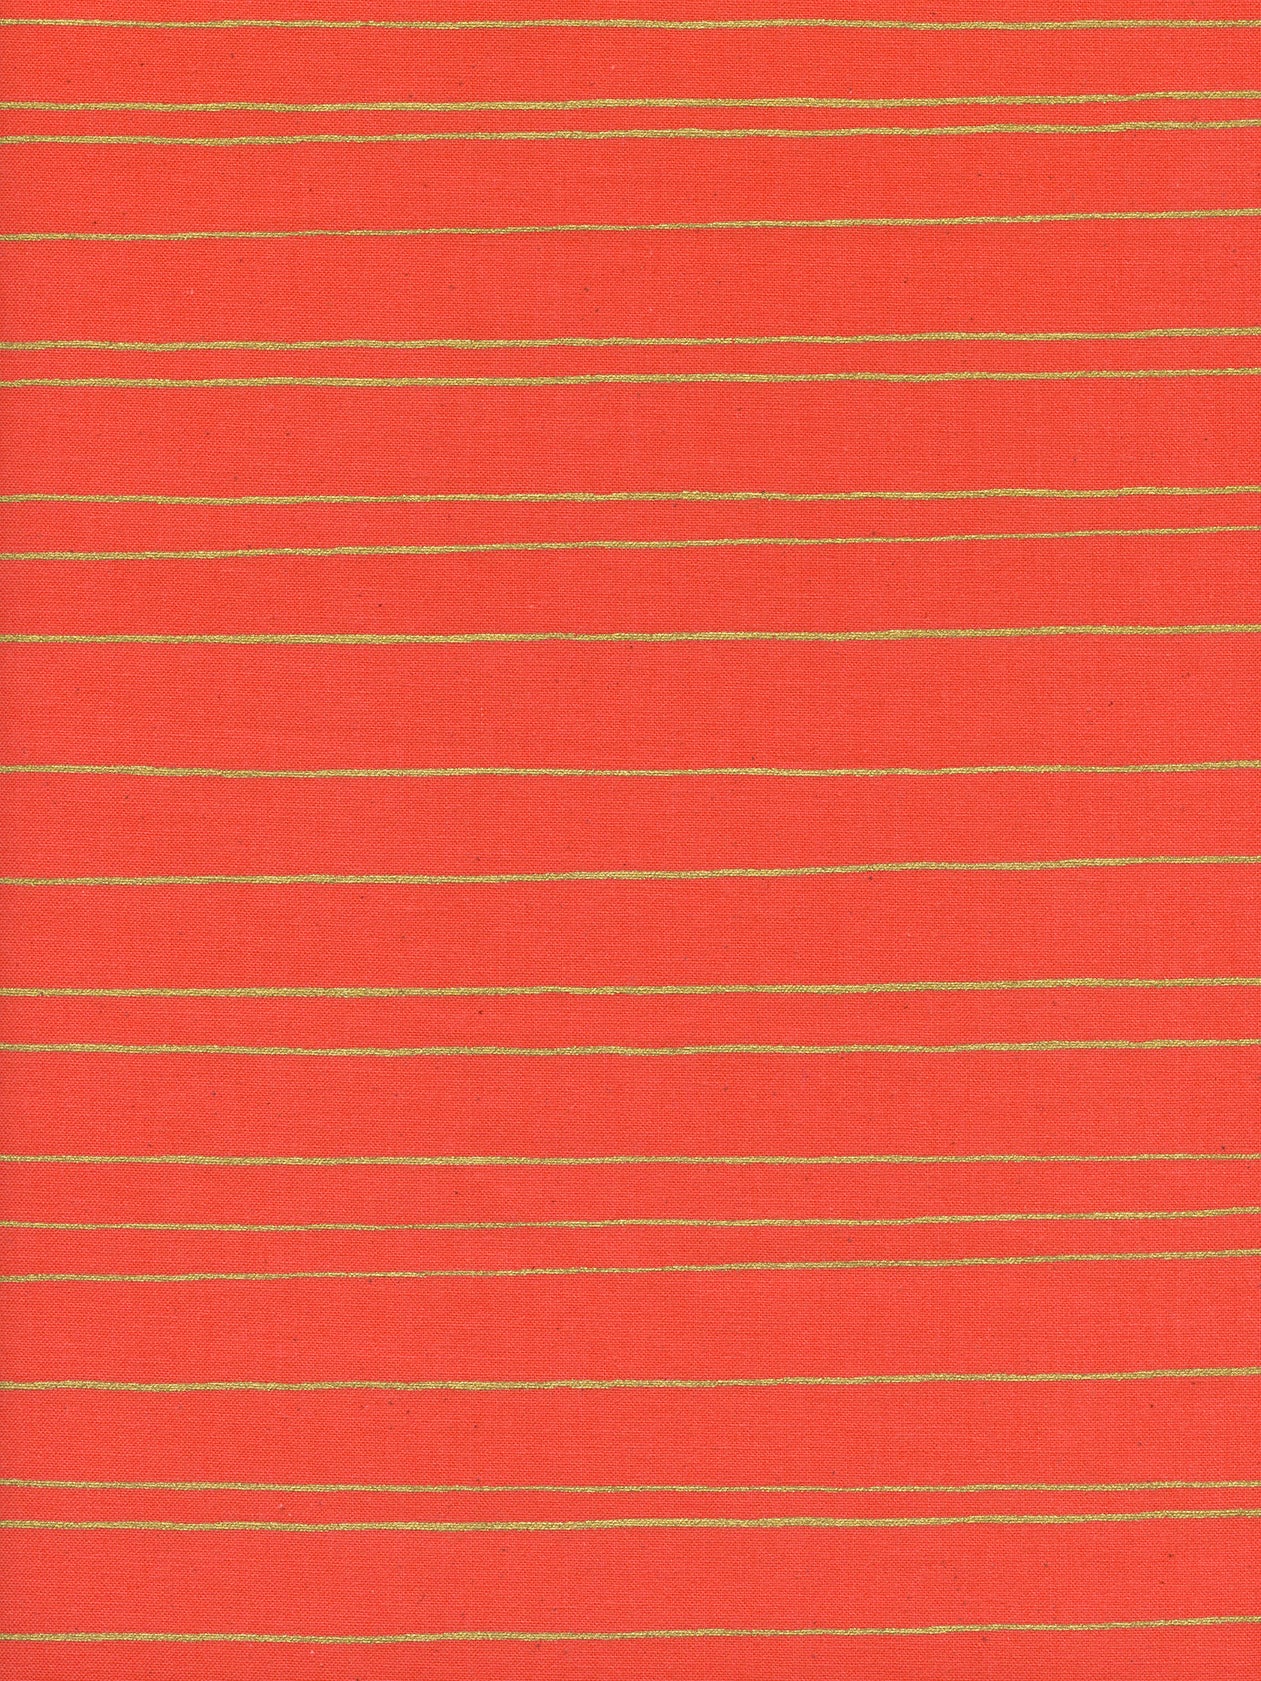 Noel Gold Stripe in Red Cotton + Steel